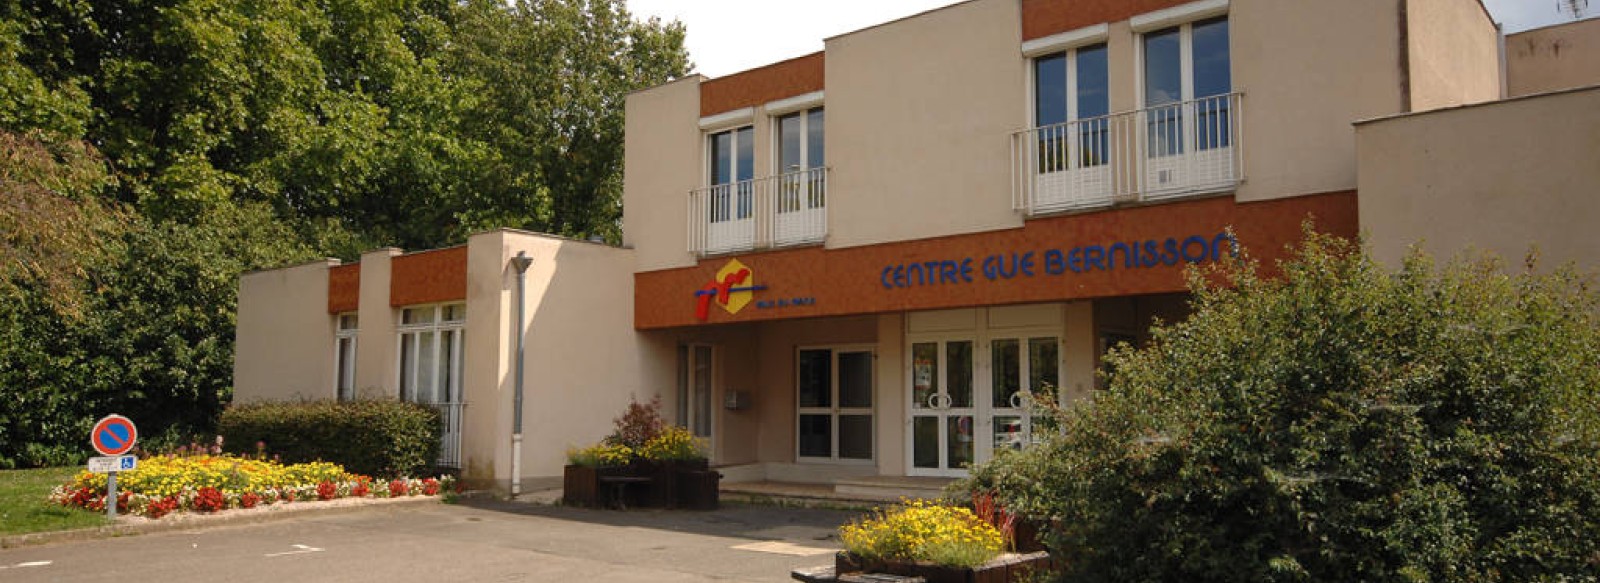 Centre du Gue Bernisson